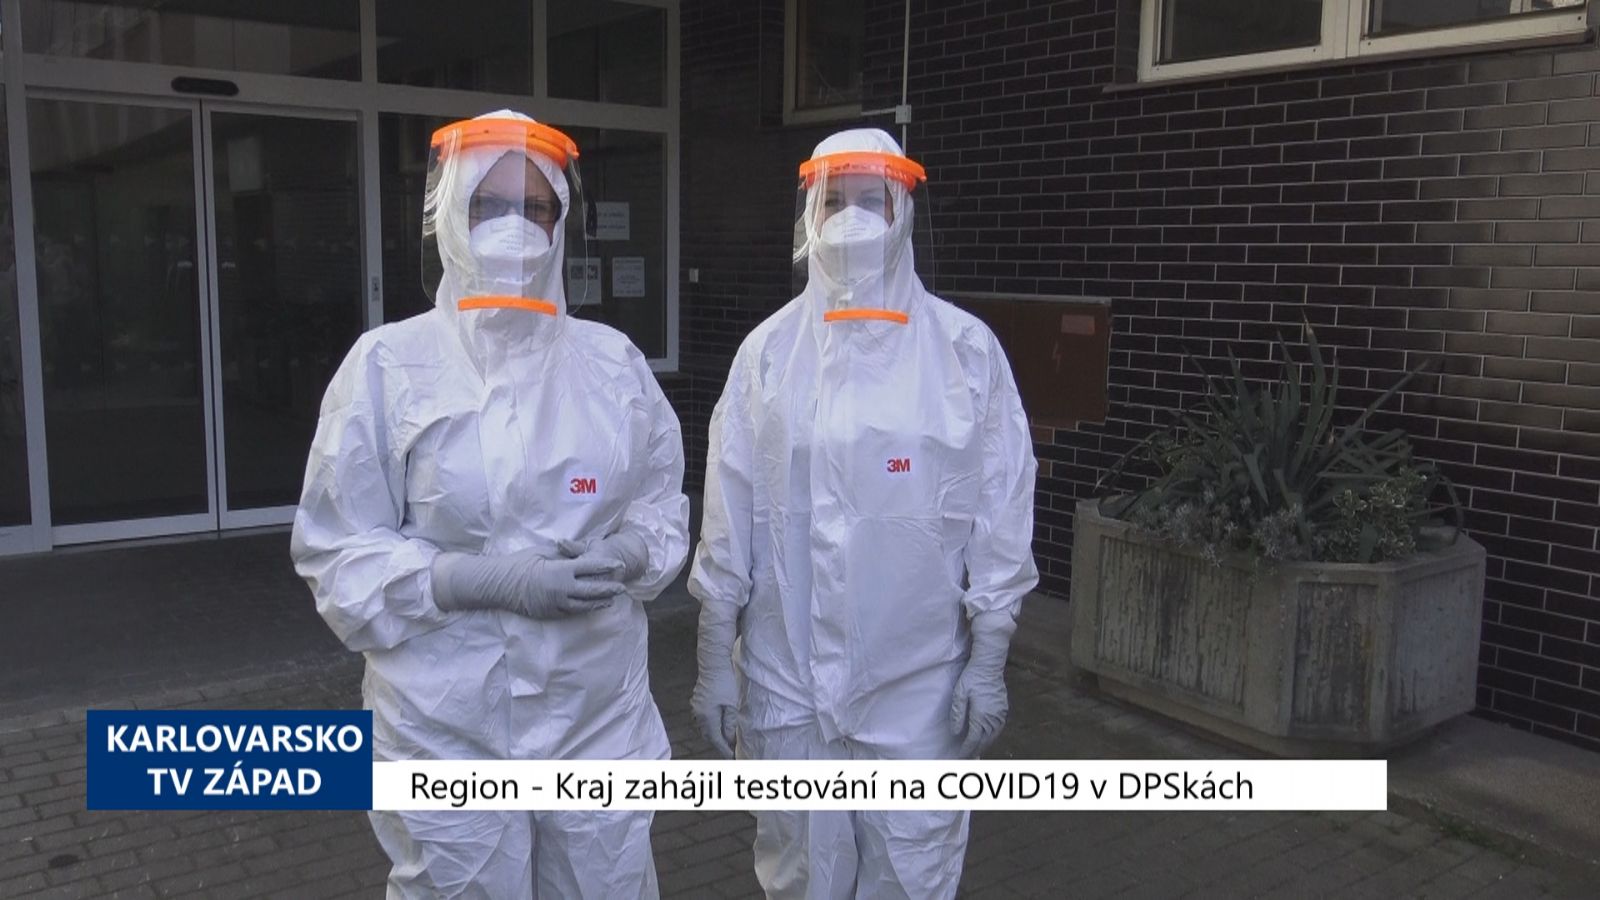 Region: Kraj zahájil testování na COVID19 DPSkách (TV Západ)